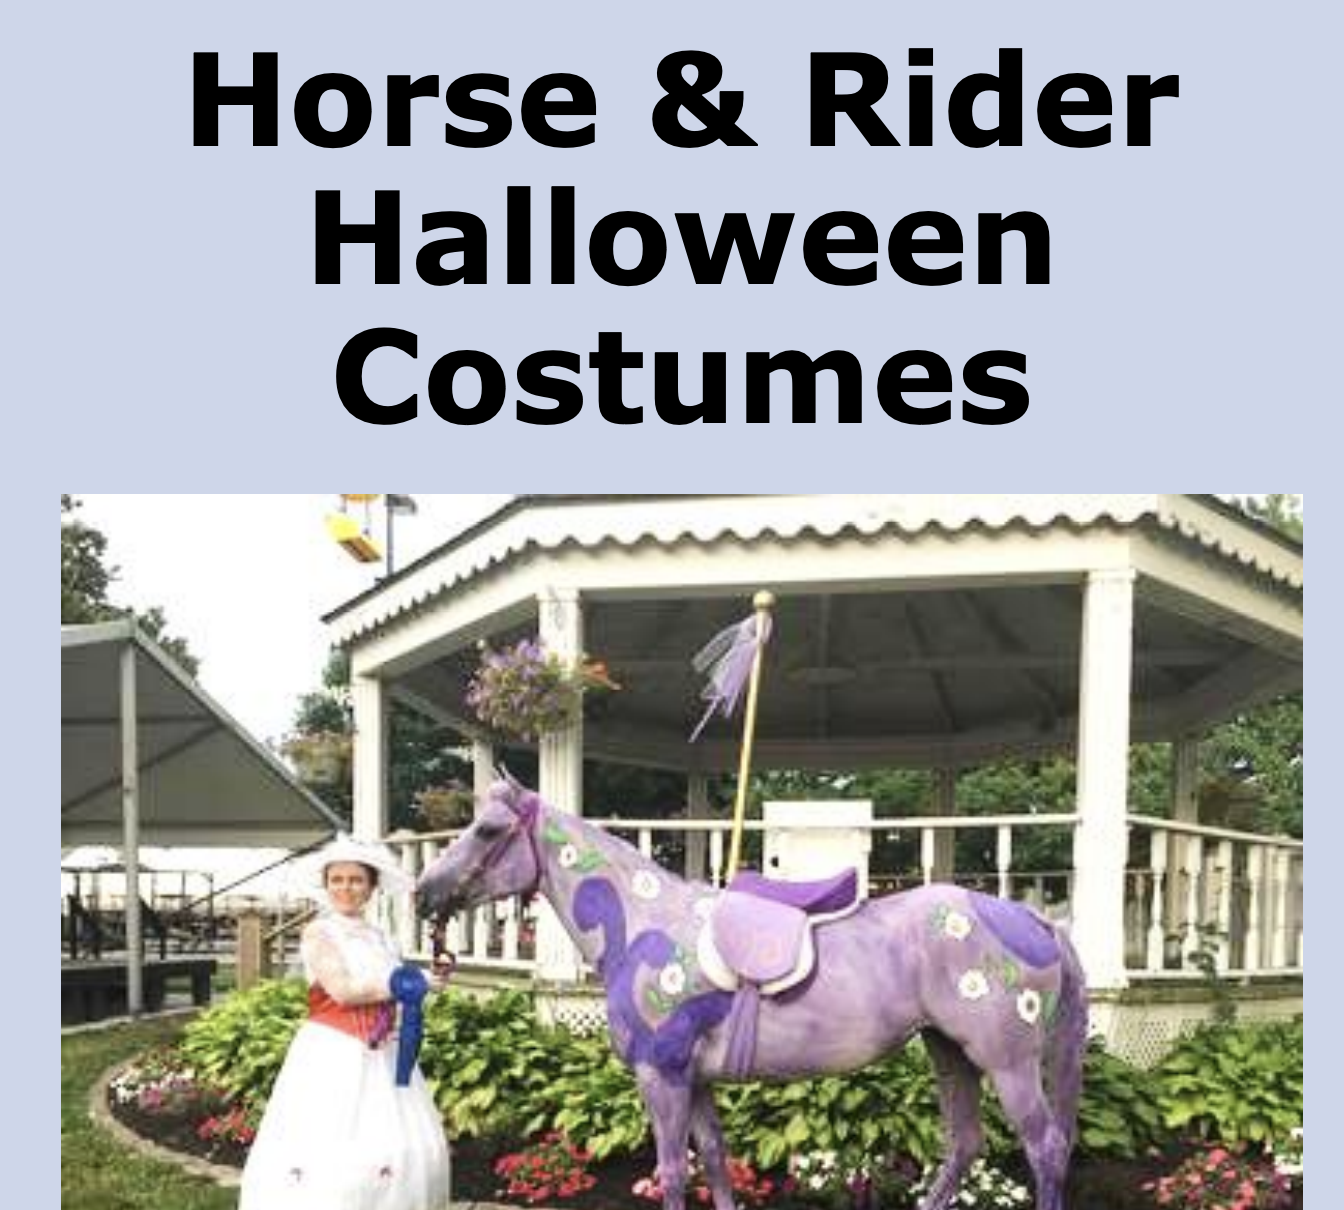 Horse Halloween Costumes ebook cover horsecrazygirls.com